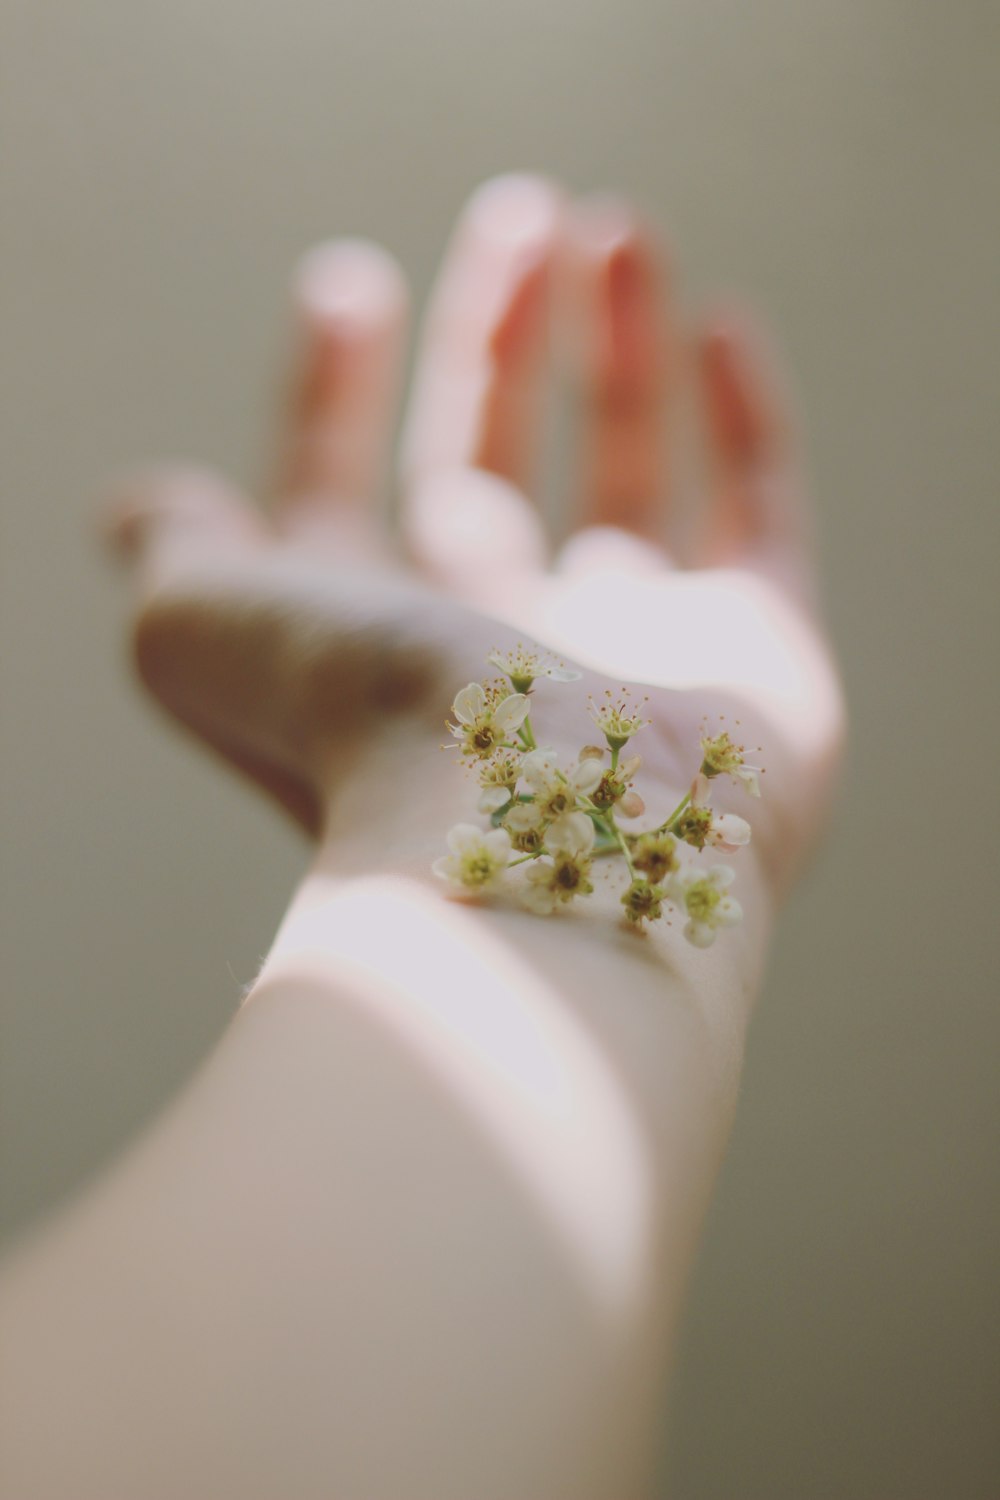 Fotografia selettiva di messa a fuoco dei fiori bianchi a grappolo sulla mano umana sinistra